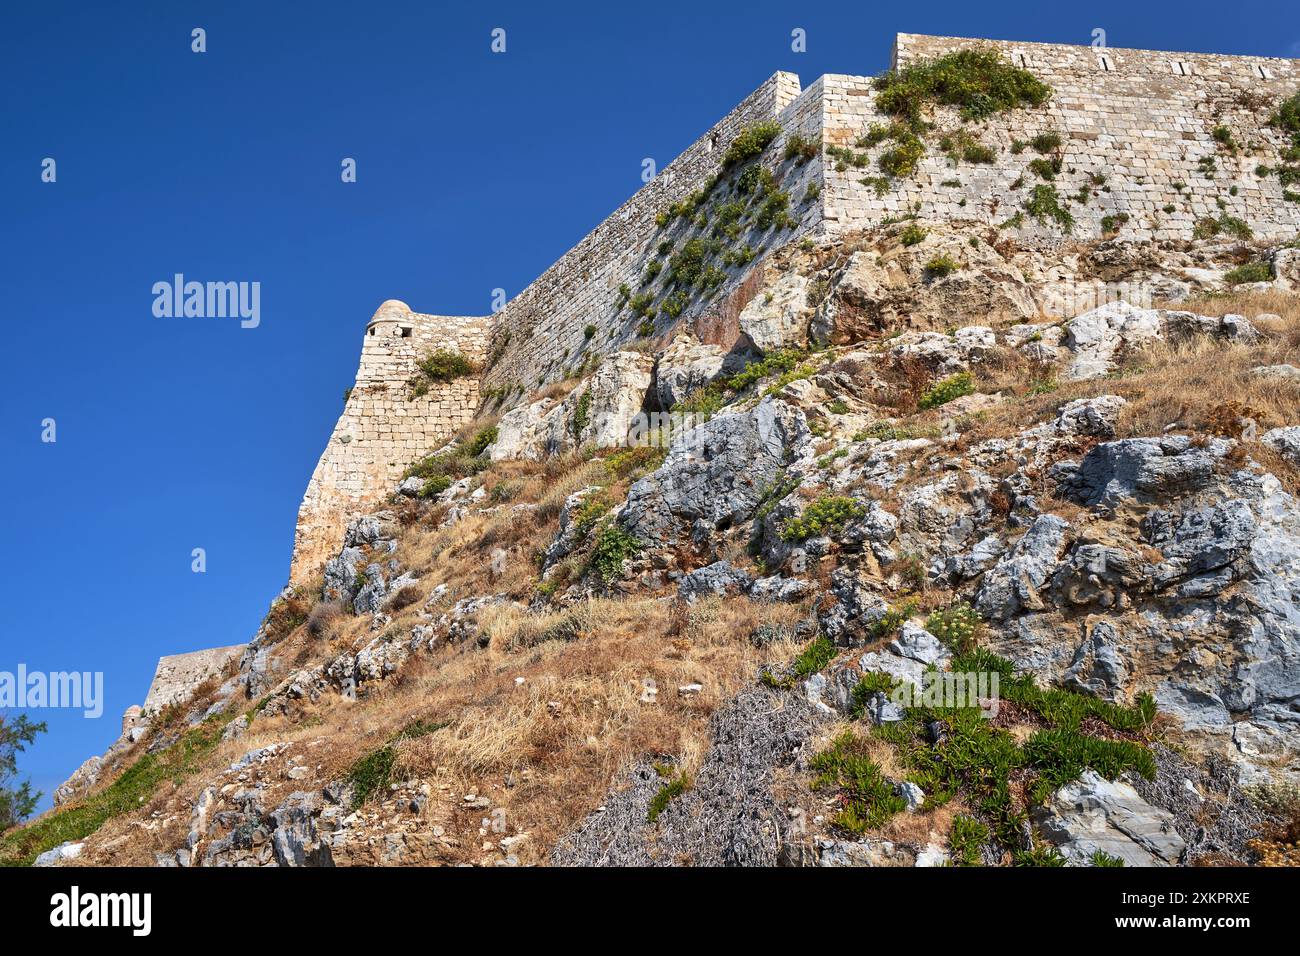 Fortifications en pierre de la forteresse vénitienne sur une colline rocheuse dans la ville de Réthymnon sur l'île de Crète en Grèce, Grèce Banque D'Images